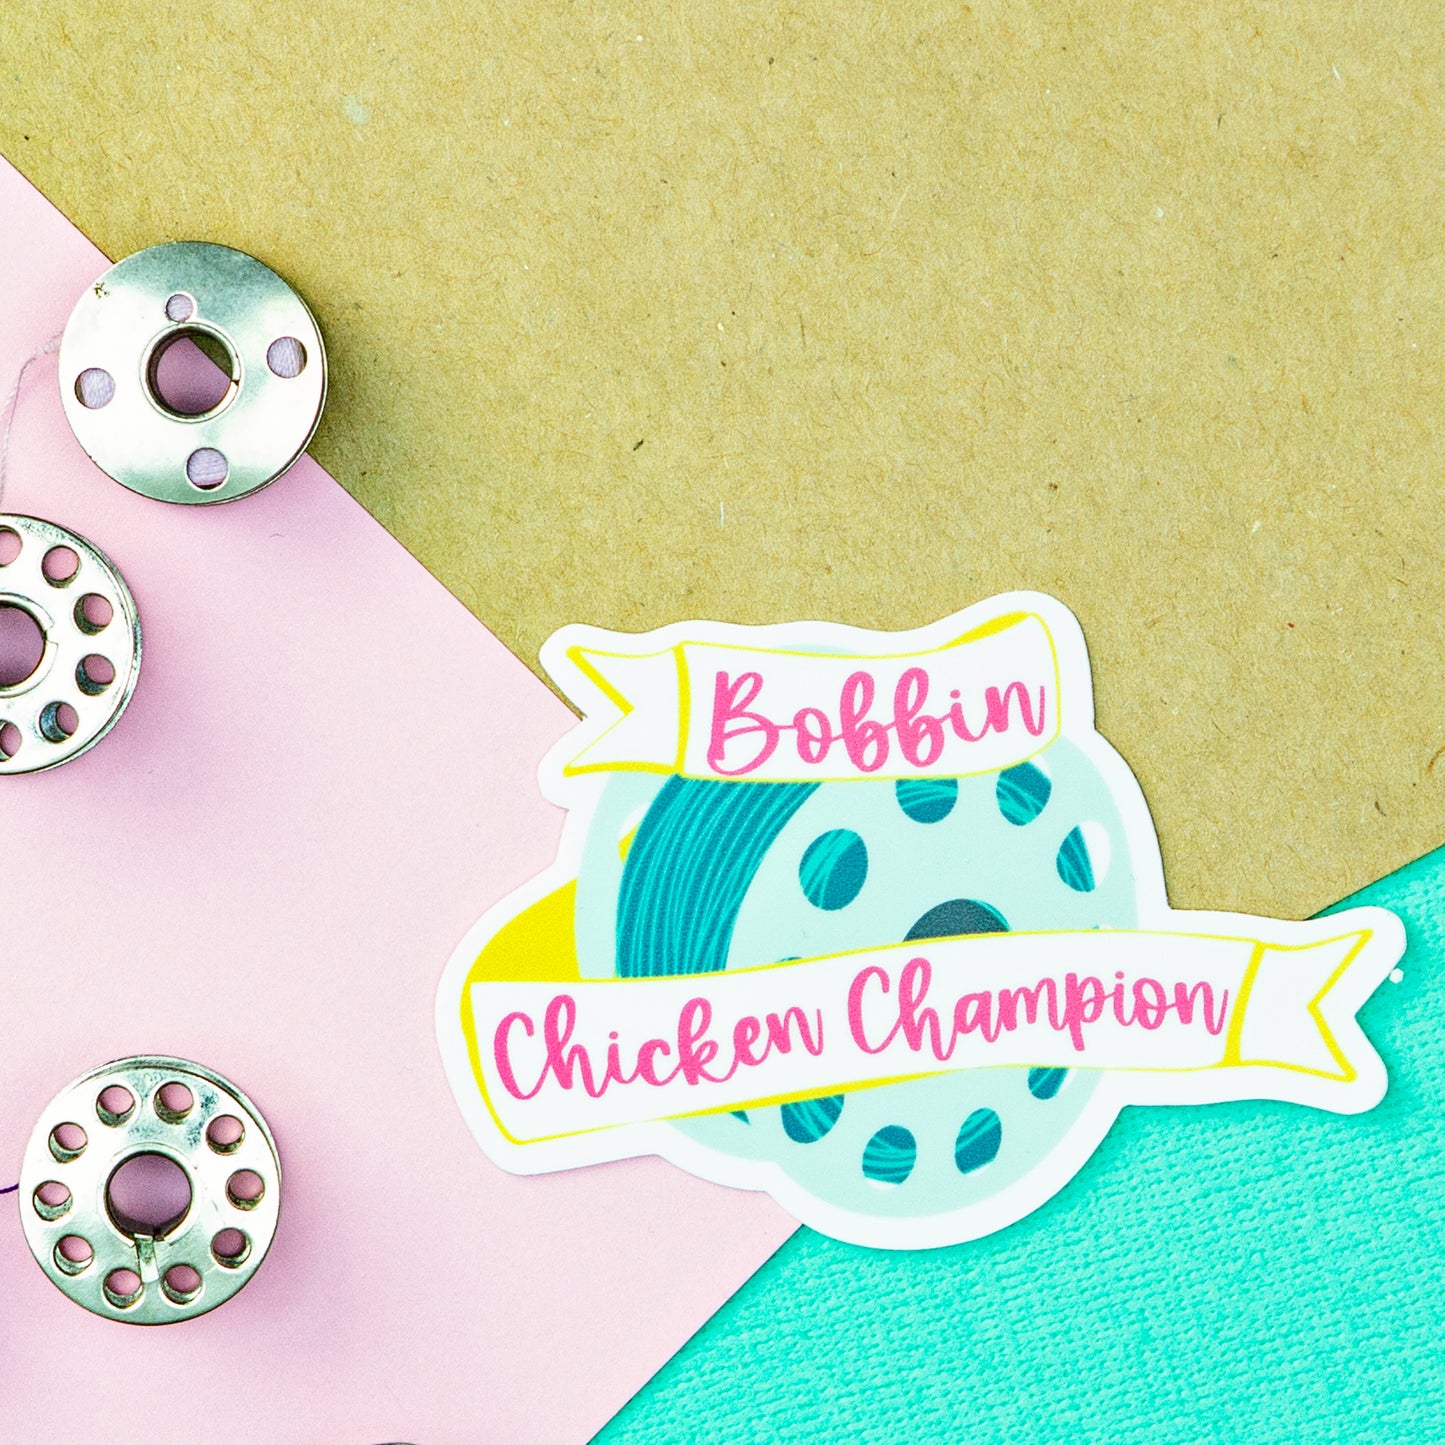 Bobbin Chicken Champion Sewing and Quilting Die Cut Sticker